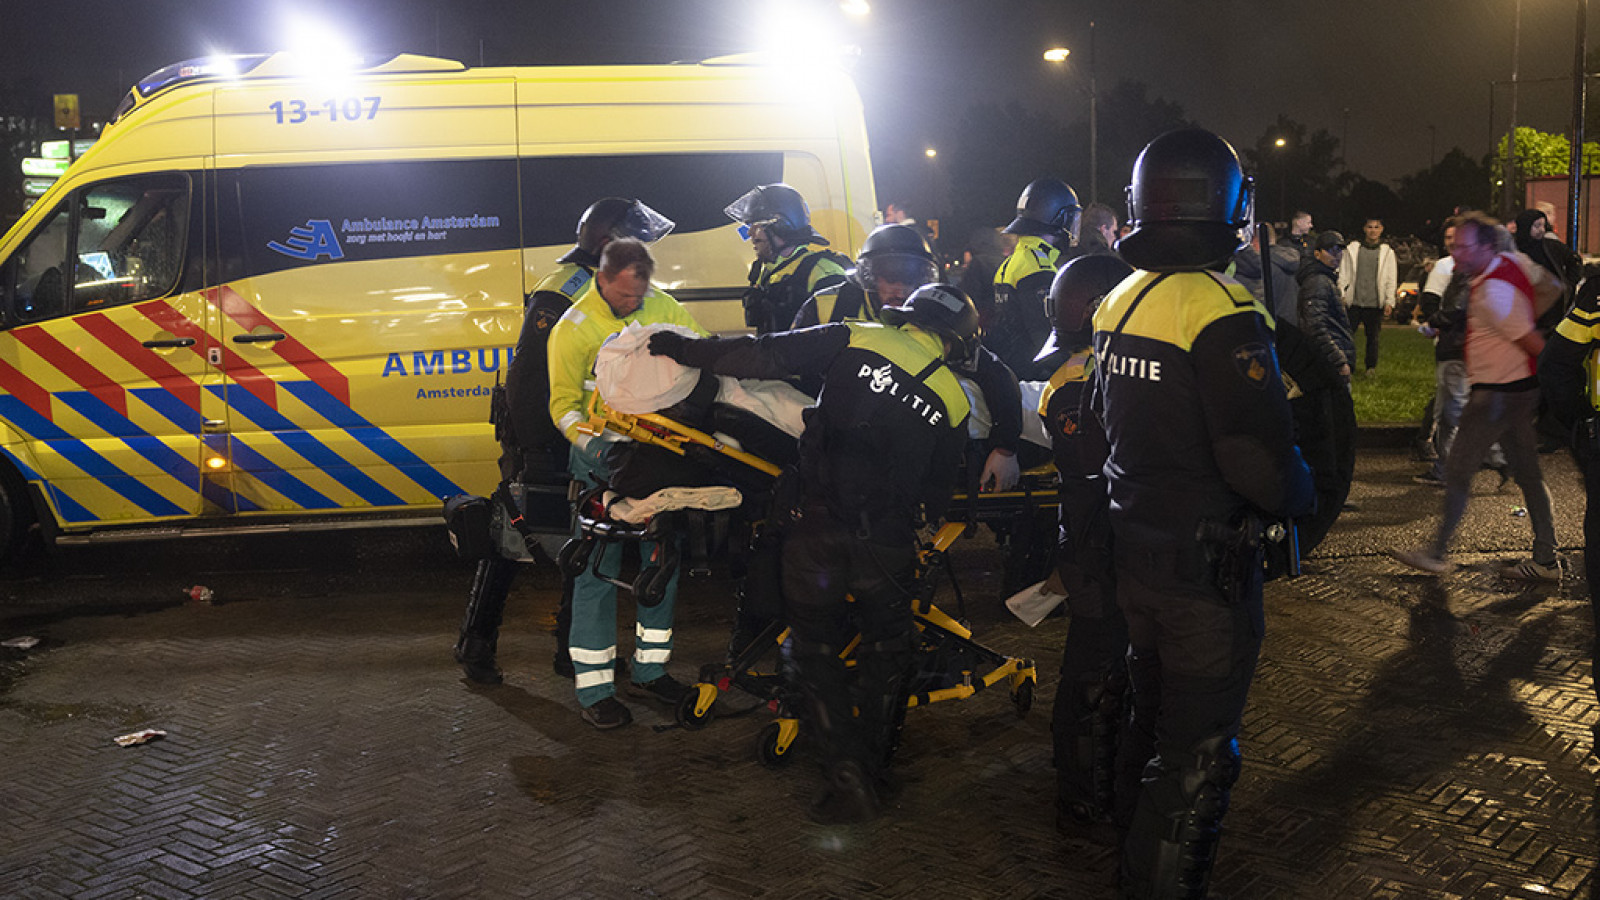 ME en Ambulance bij kampioensavond Johan Cruijff Arena